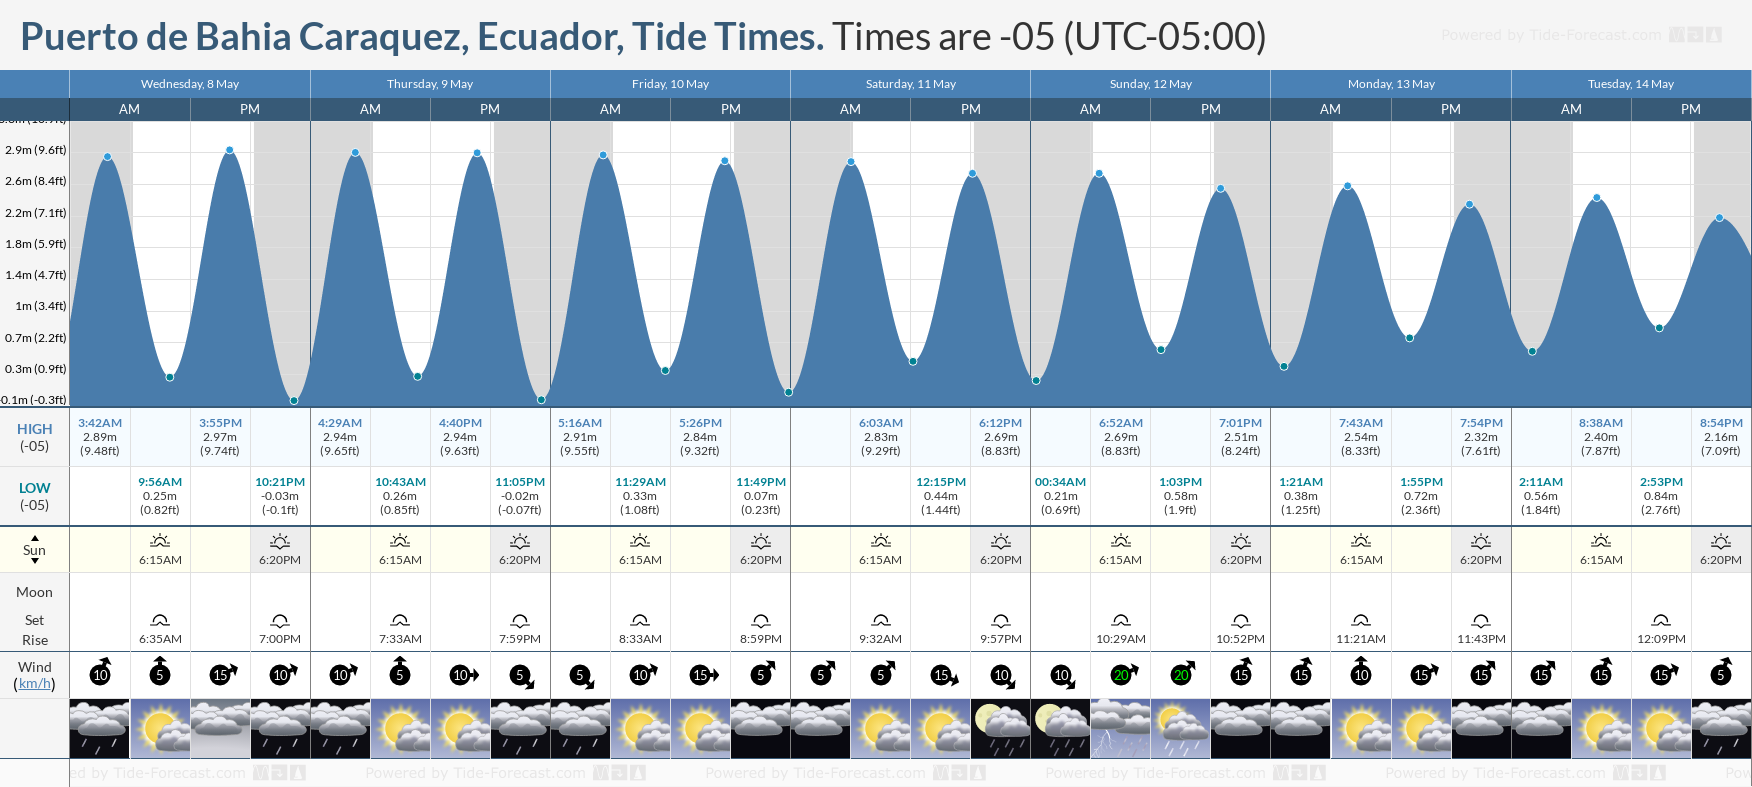 Puerto de Bahia Caraquez, Ecuador Tide Chart including high and low tide times for the next 7 days